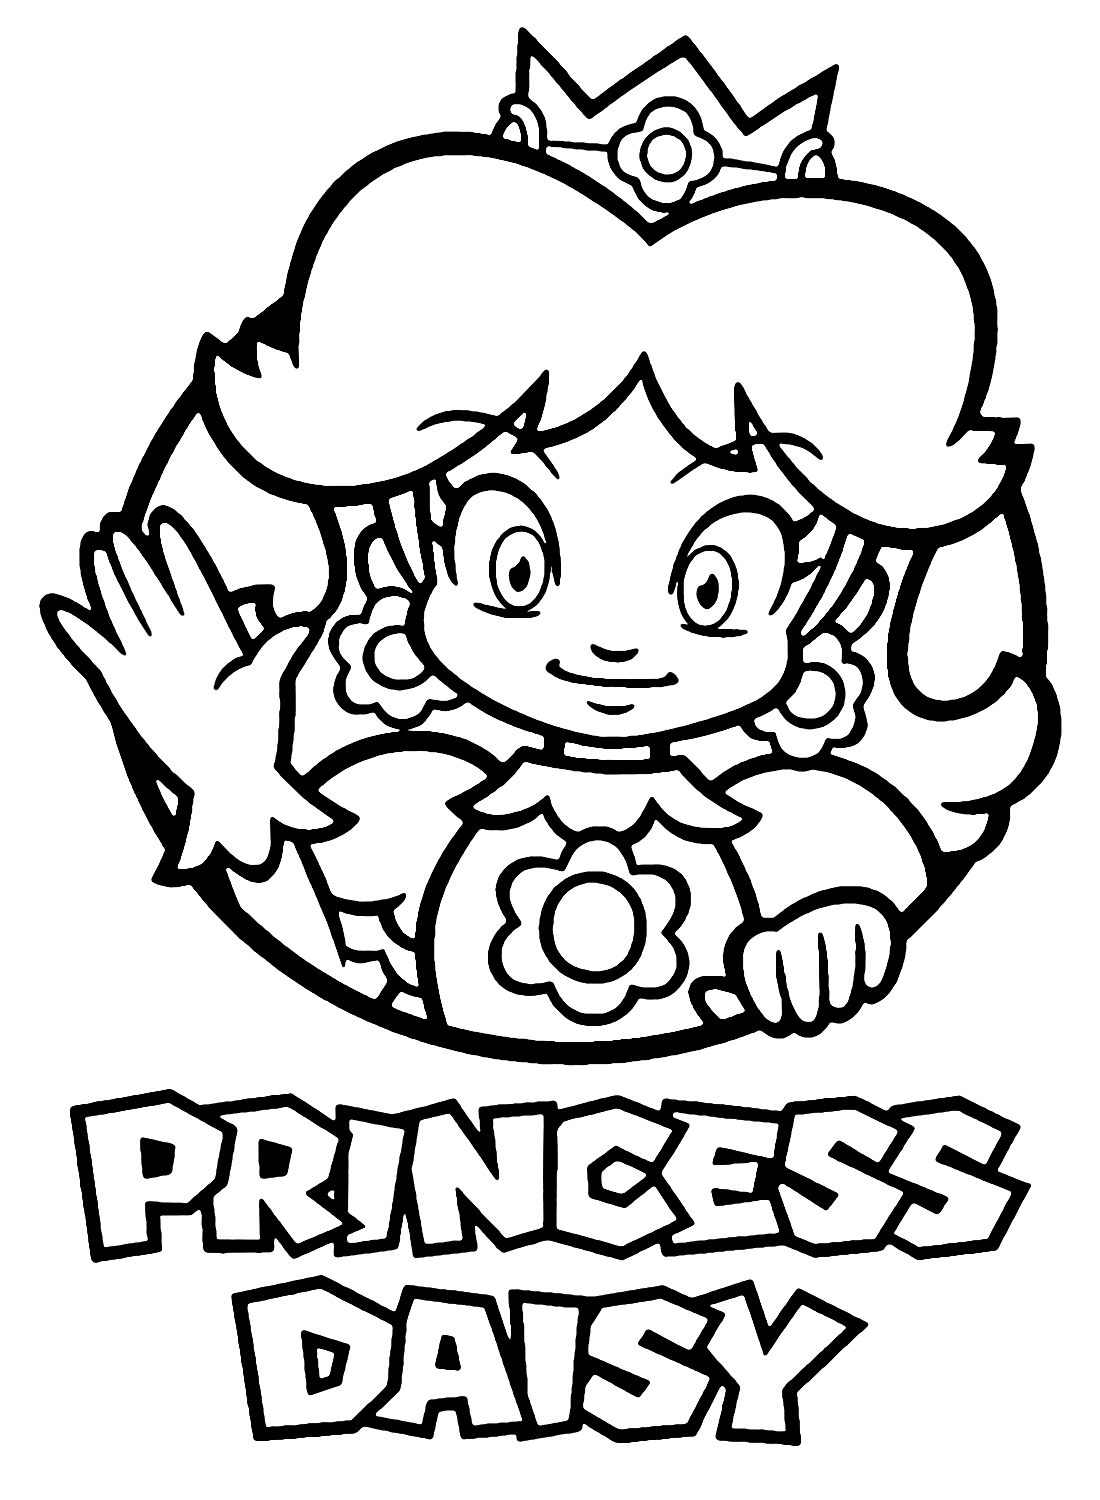 Super Mario Bros Princesse Daisy de Princesse Daisy